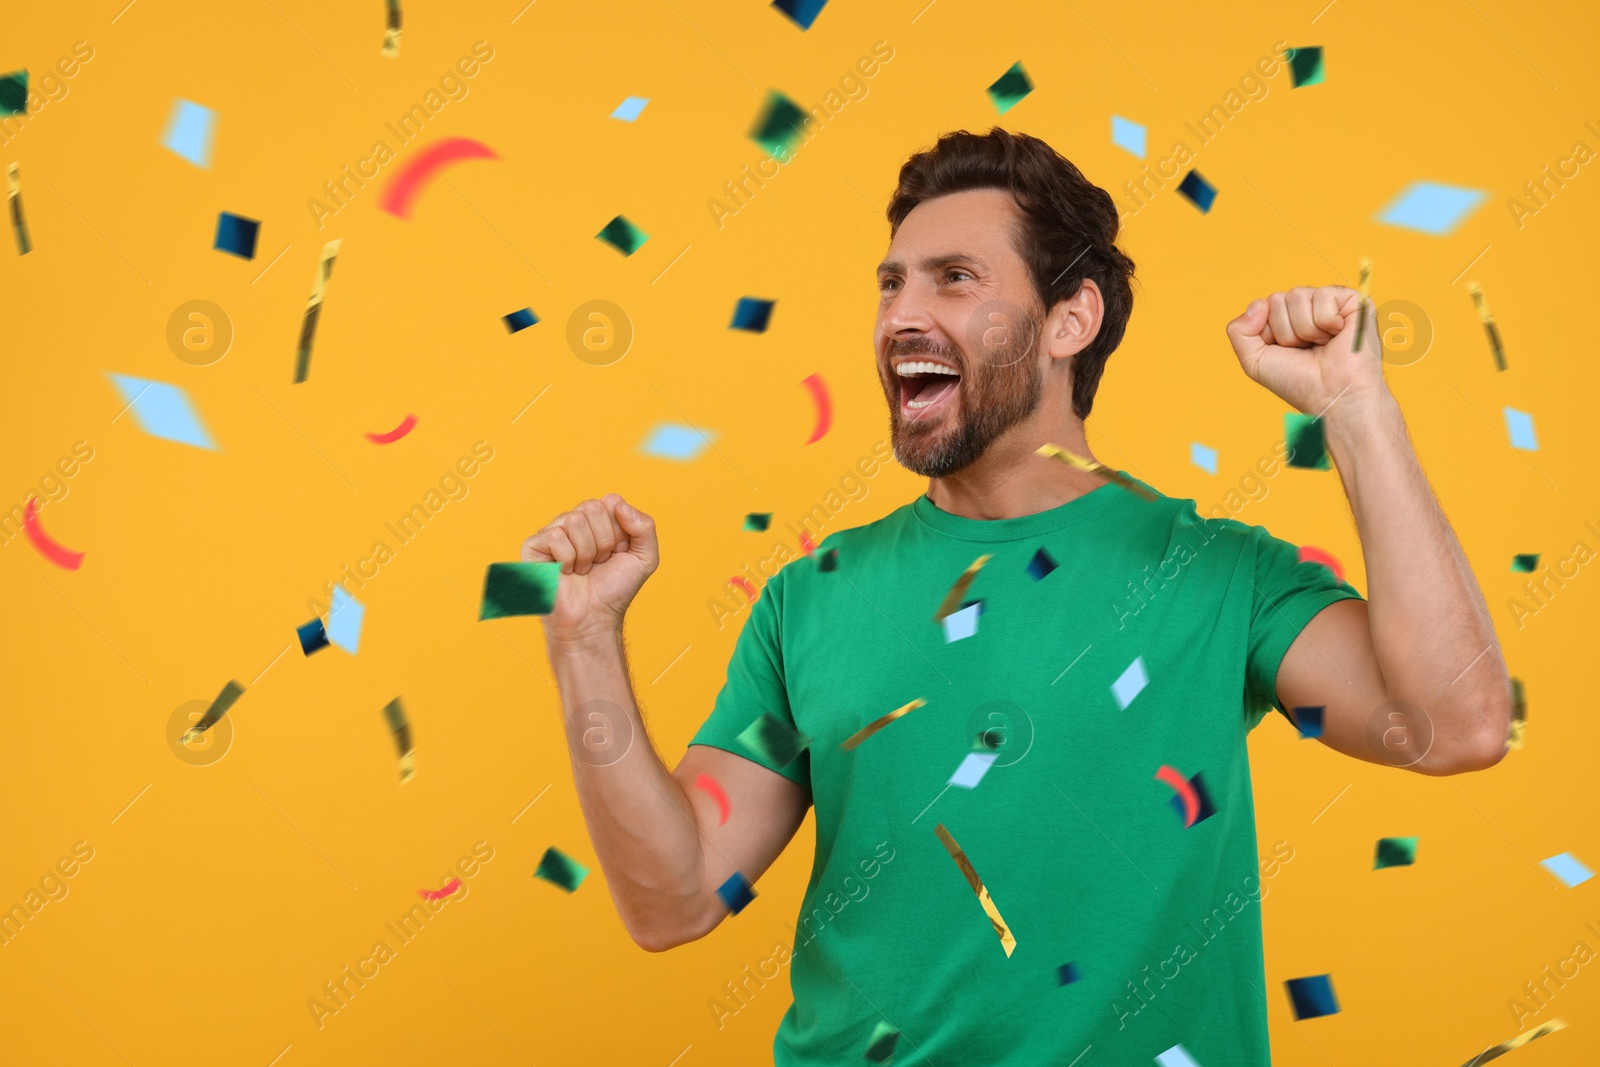 Image of Happy man under falling confetti on orange background